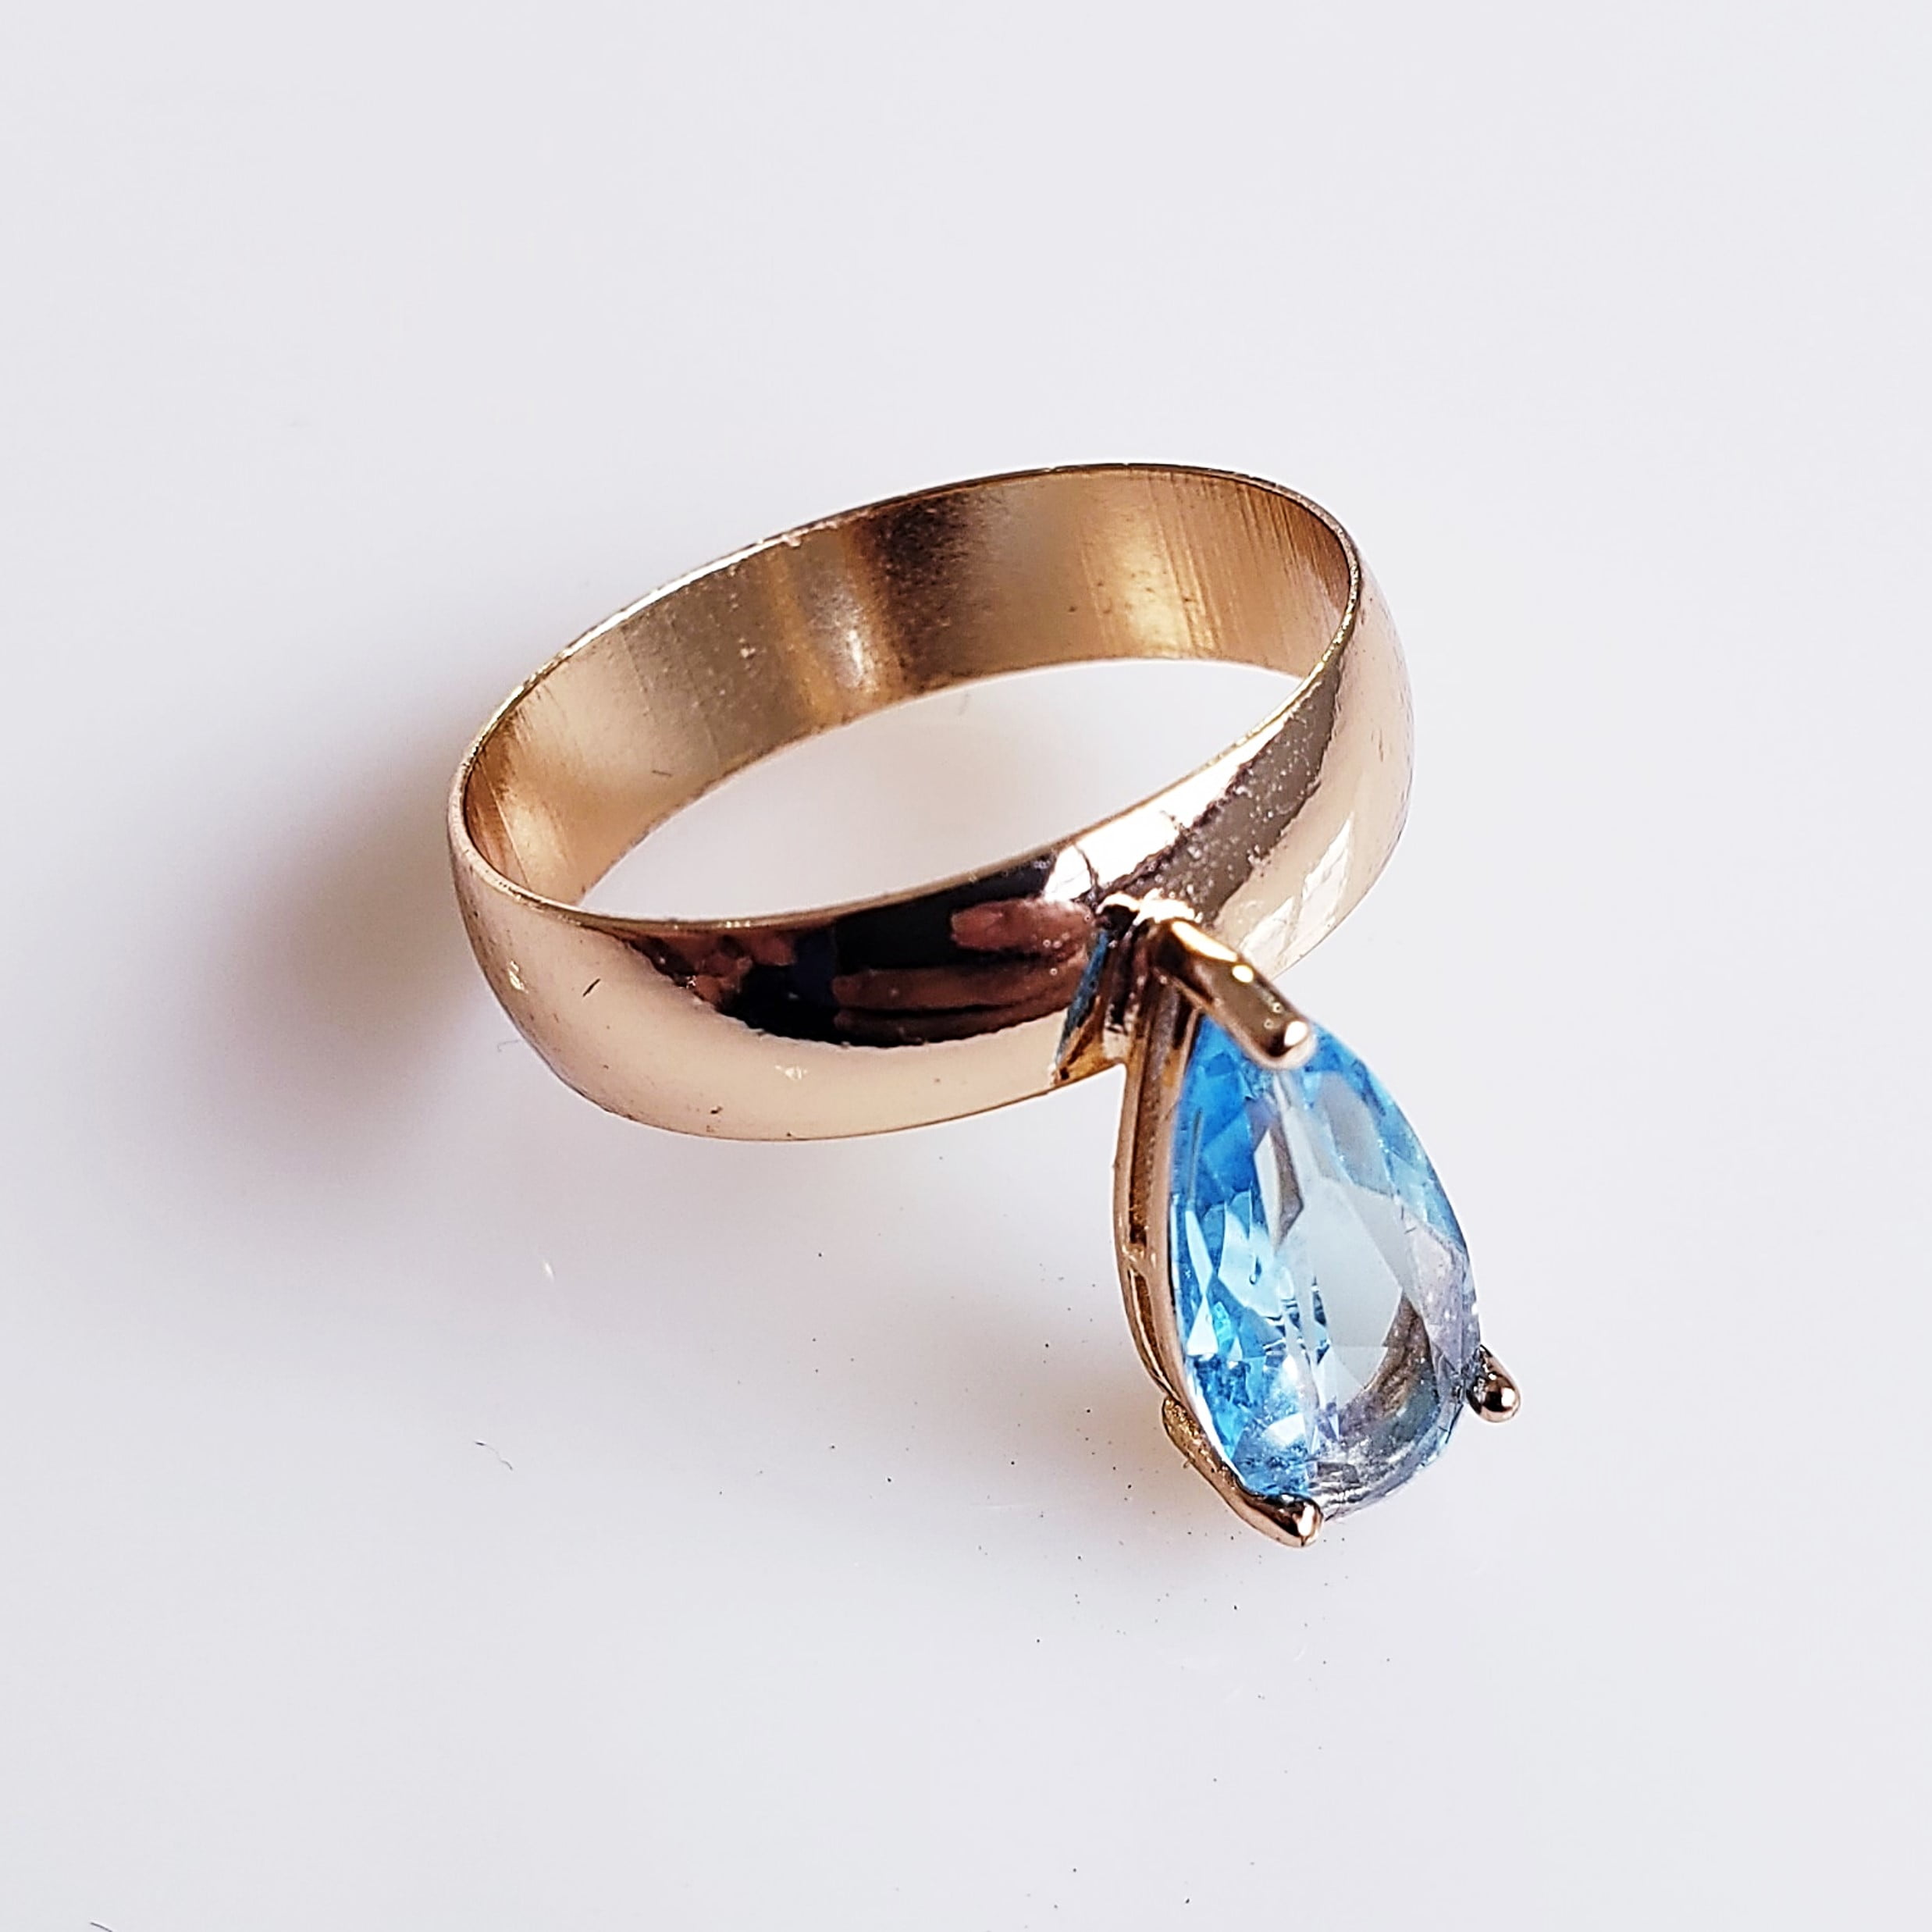 *Anel de cristal azul aquamarine - modelo Princess1 - banhado a ouro    